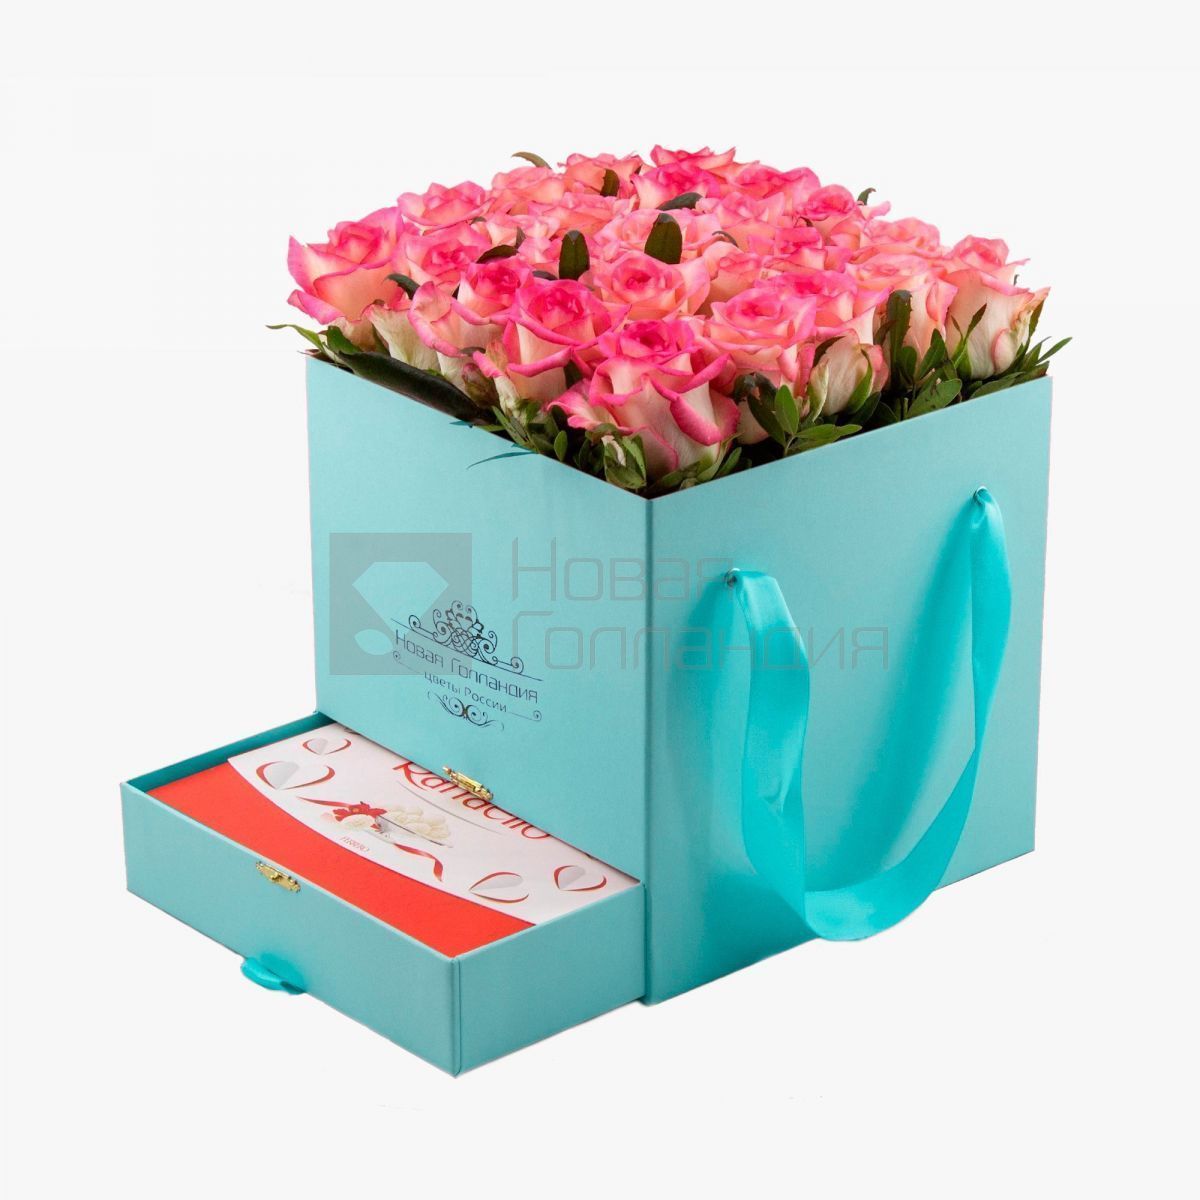 Тиффани коробка шкатулка 25 розовых роз Джумелия Raffaello в подарок №678